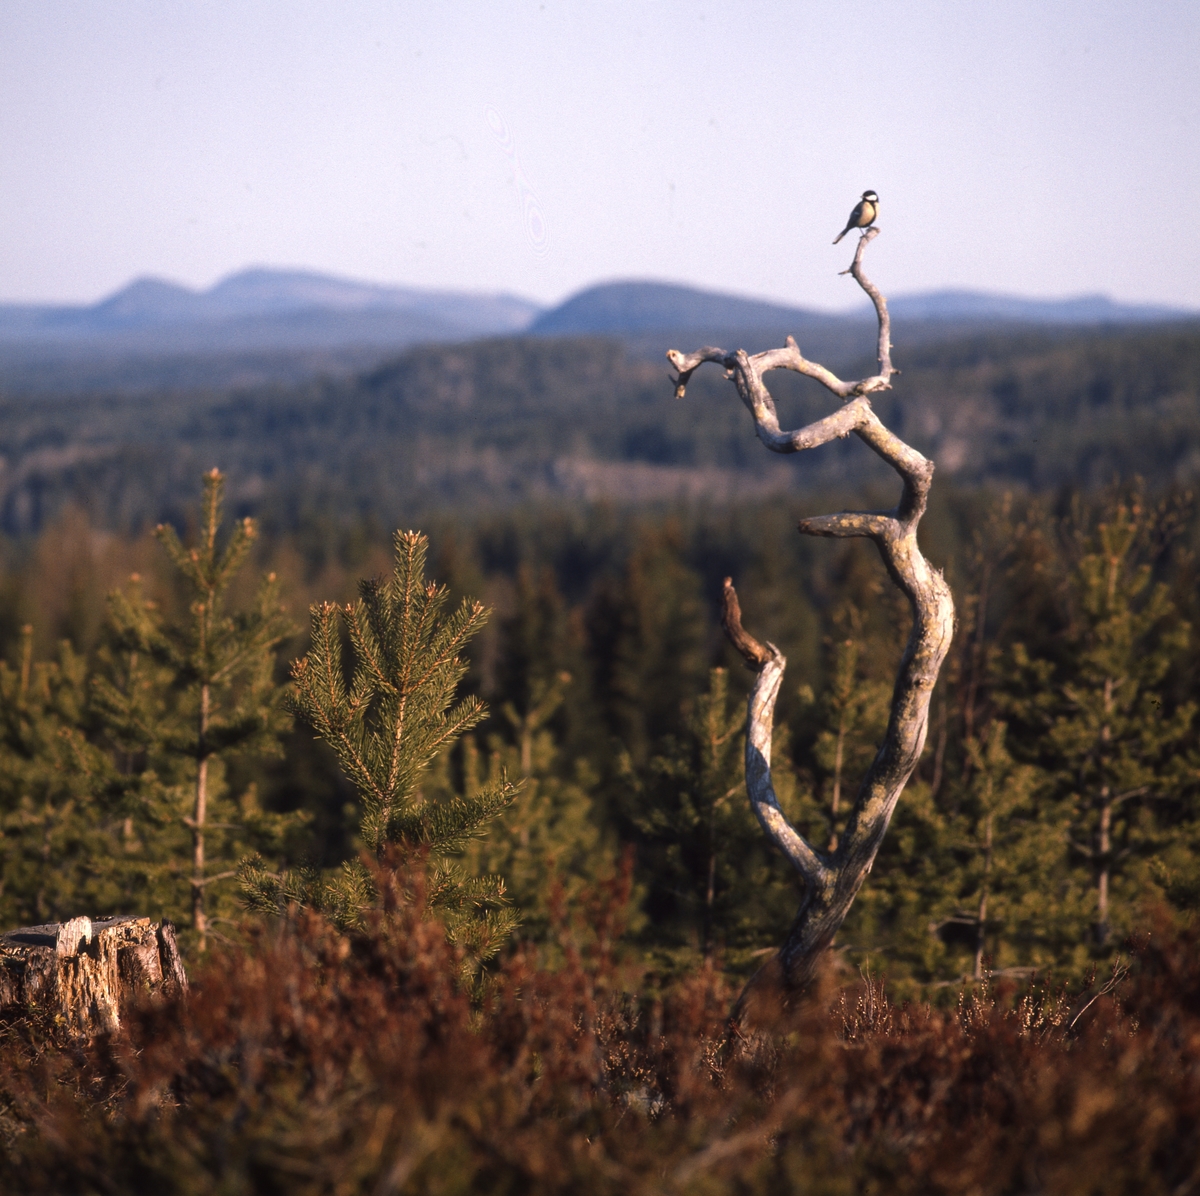 Talgoxe sitter i toppen av en torraka, med fin utsikt över landskapet med berg och skog.